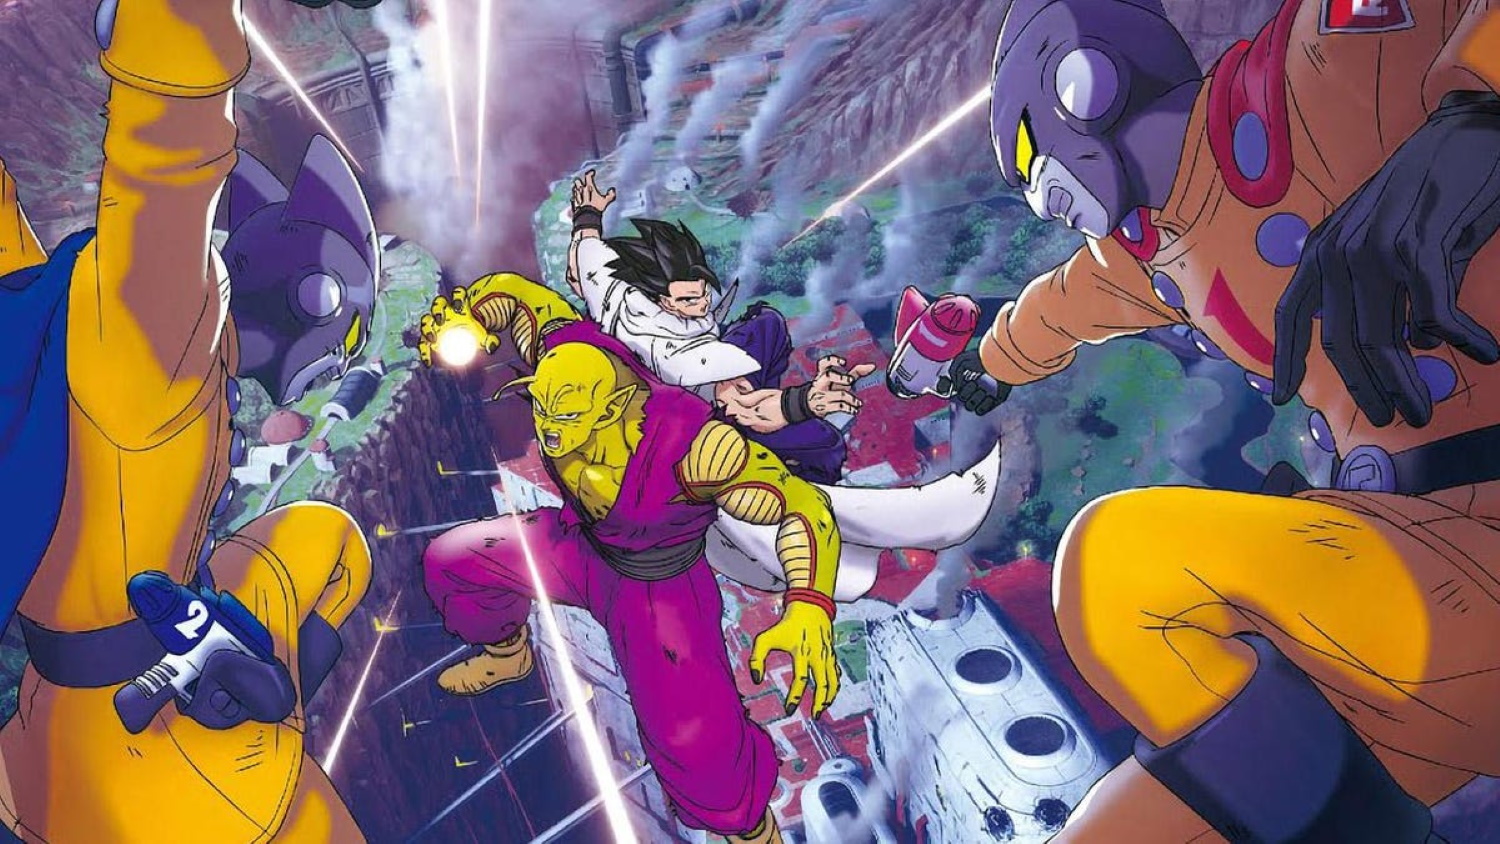 Dragon Ball Super: Super Hero Movie Ending Explained - IGN